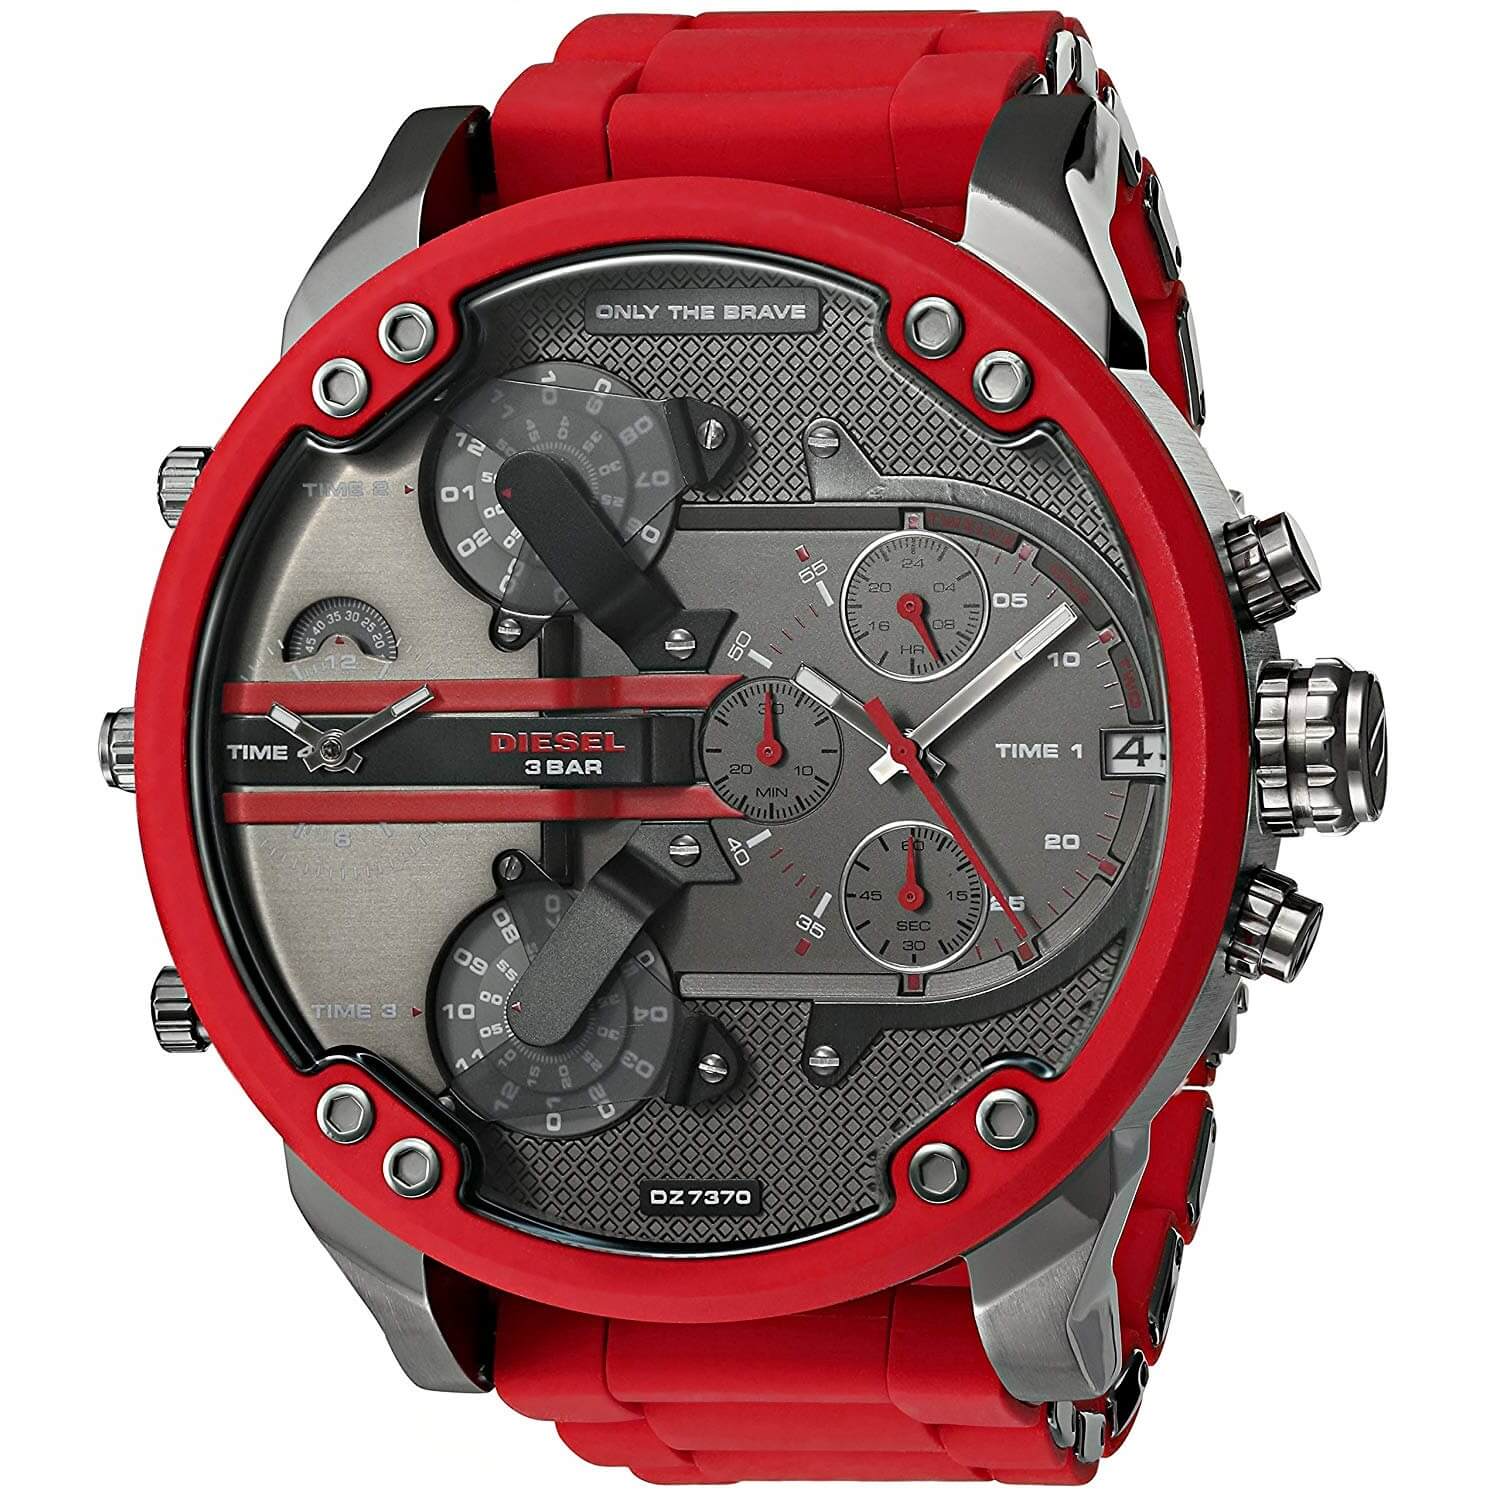 Reloj Diesel DZ7370 Mr. Daddy 2.0 100% Original 50% Descuento Mr Daddy 2.0, Rojo | Zshop Colombia